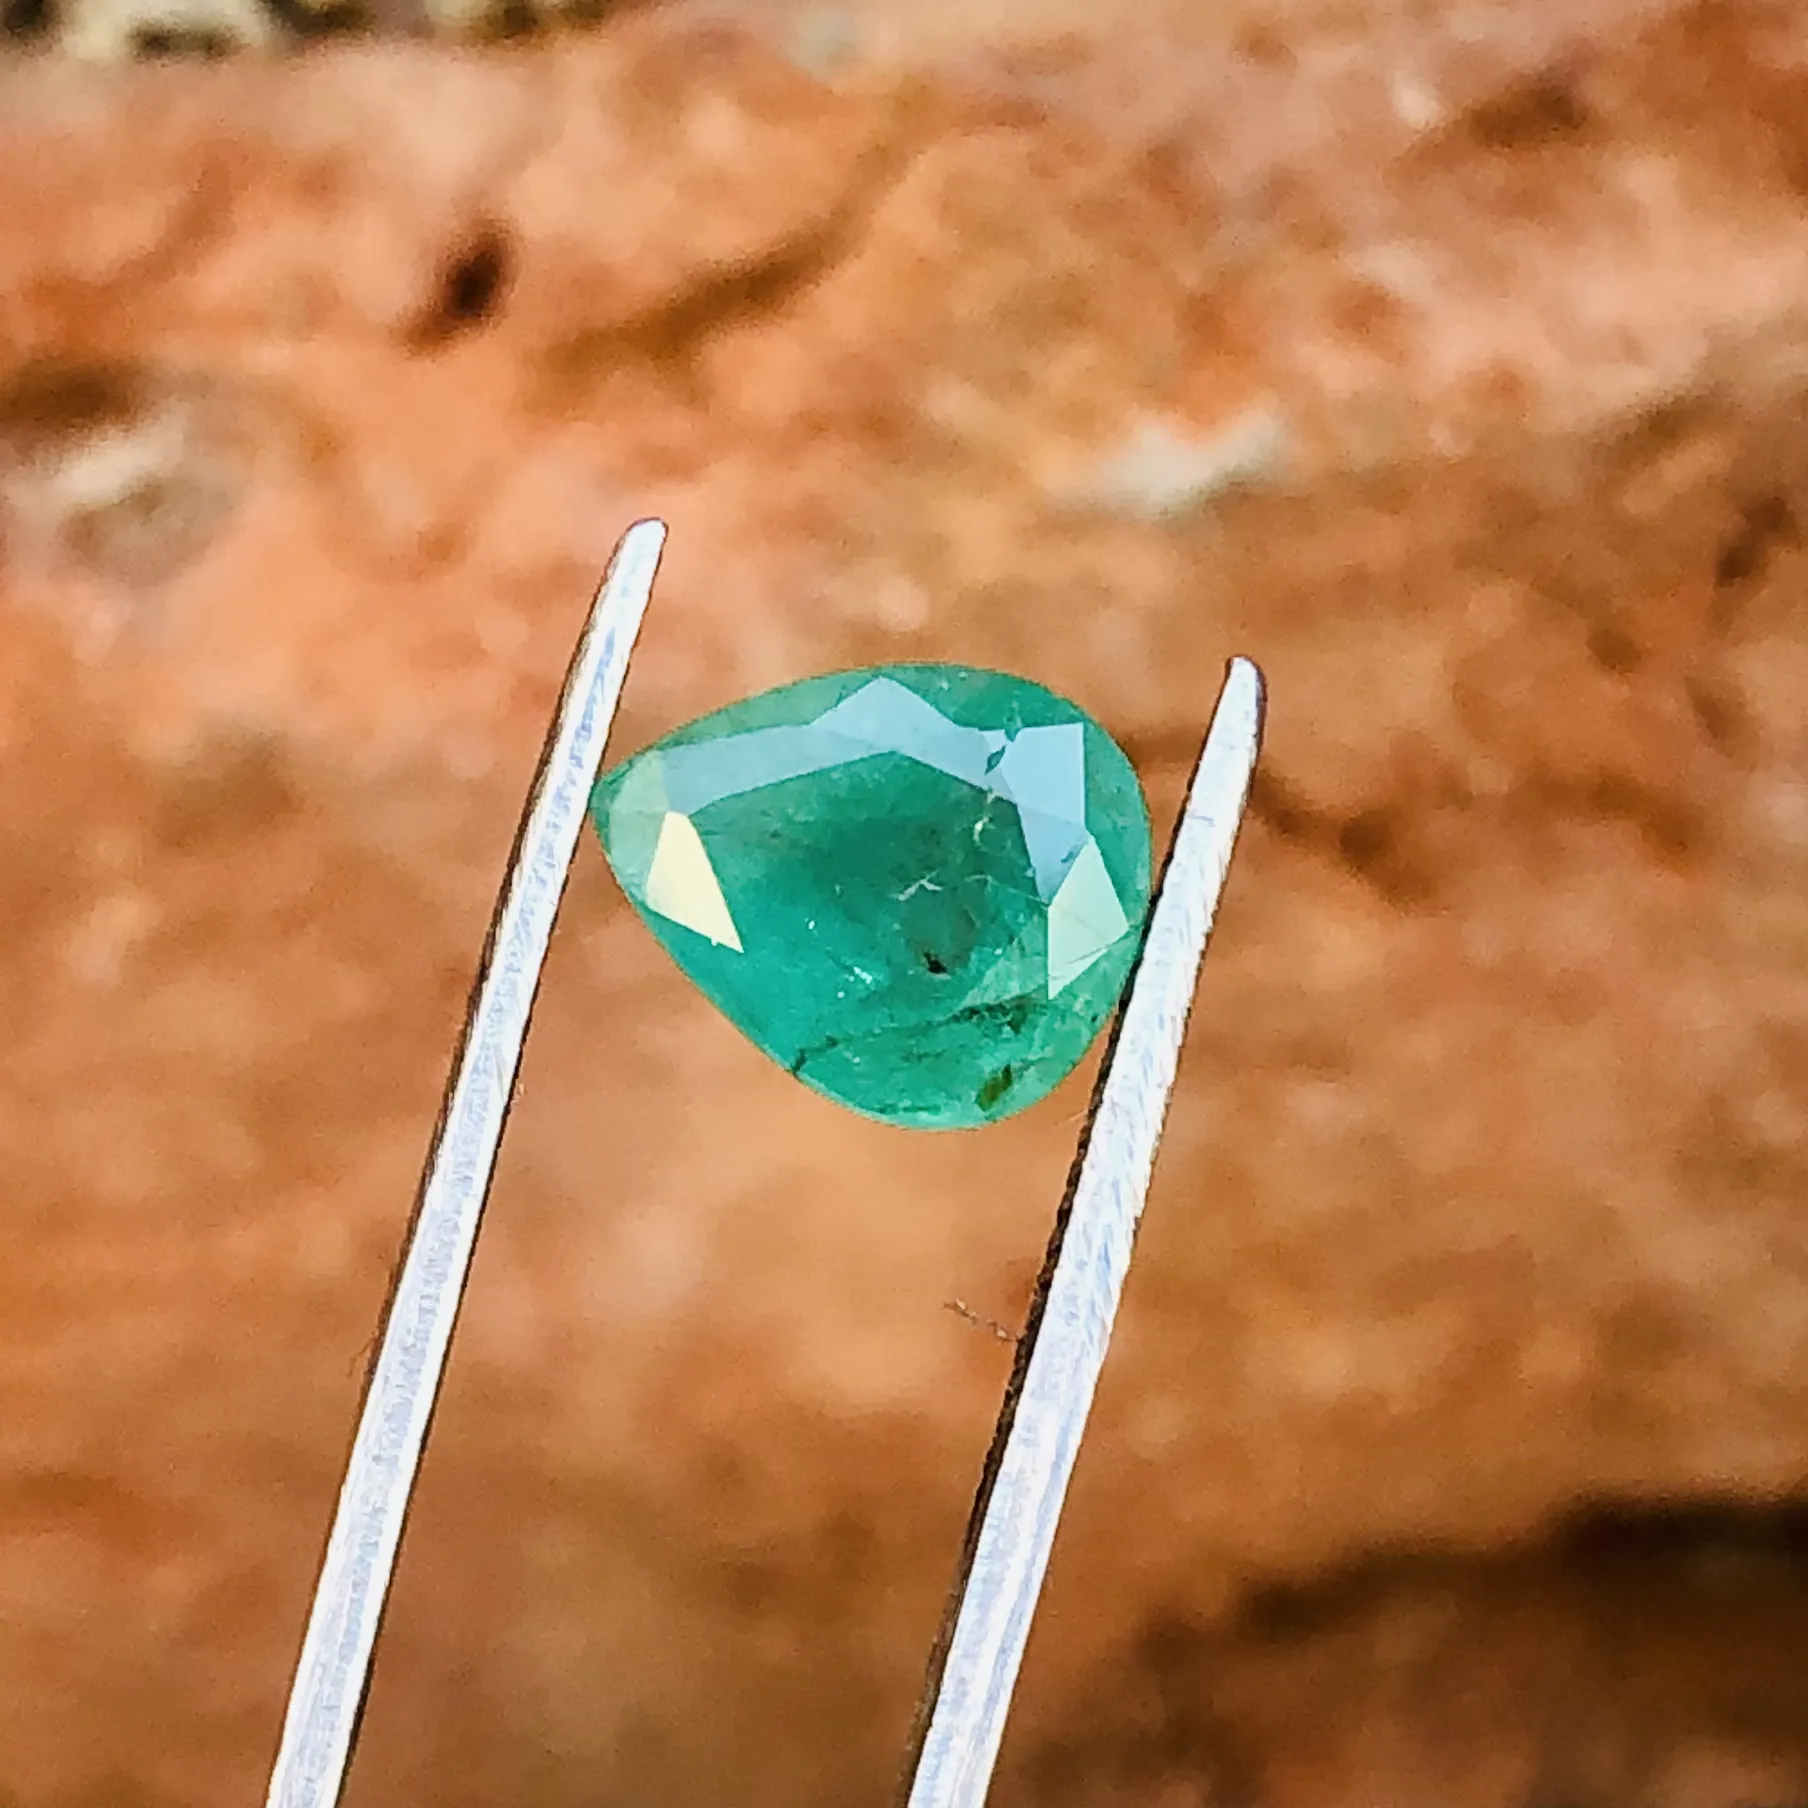 أحجار كريمة طبيعية للأغراض التنجيمية لصنع المجوهرات المصنوعة يدويًا من اللون الأخضر المنتج السائب